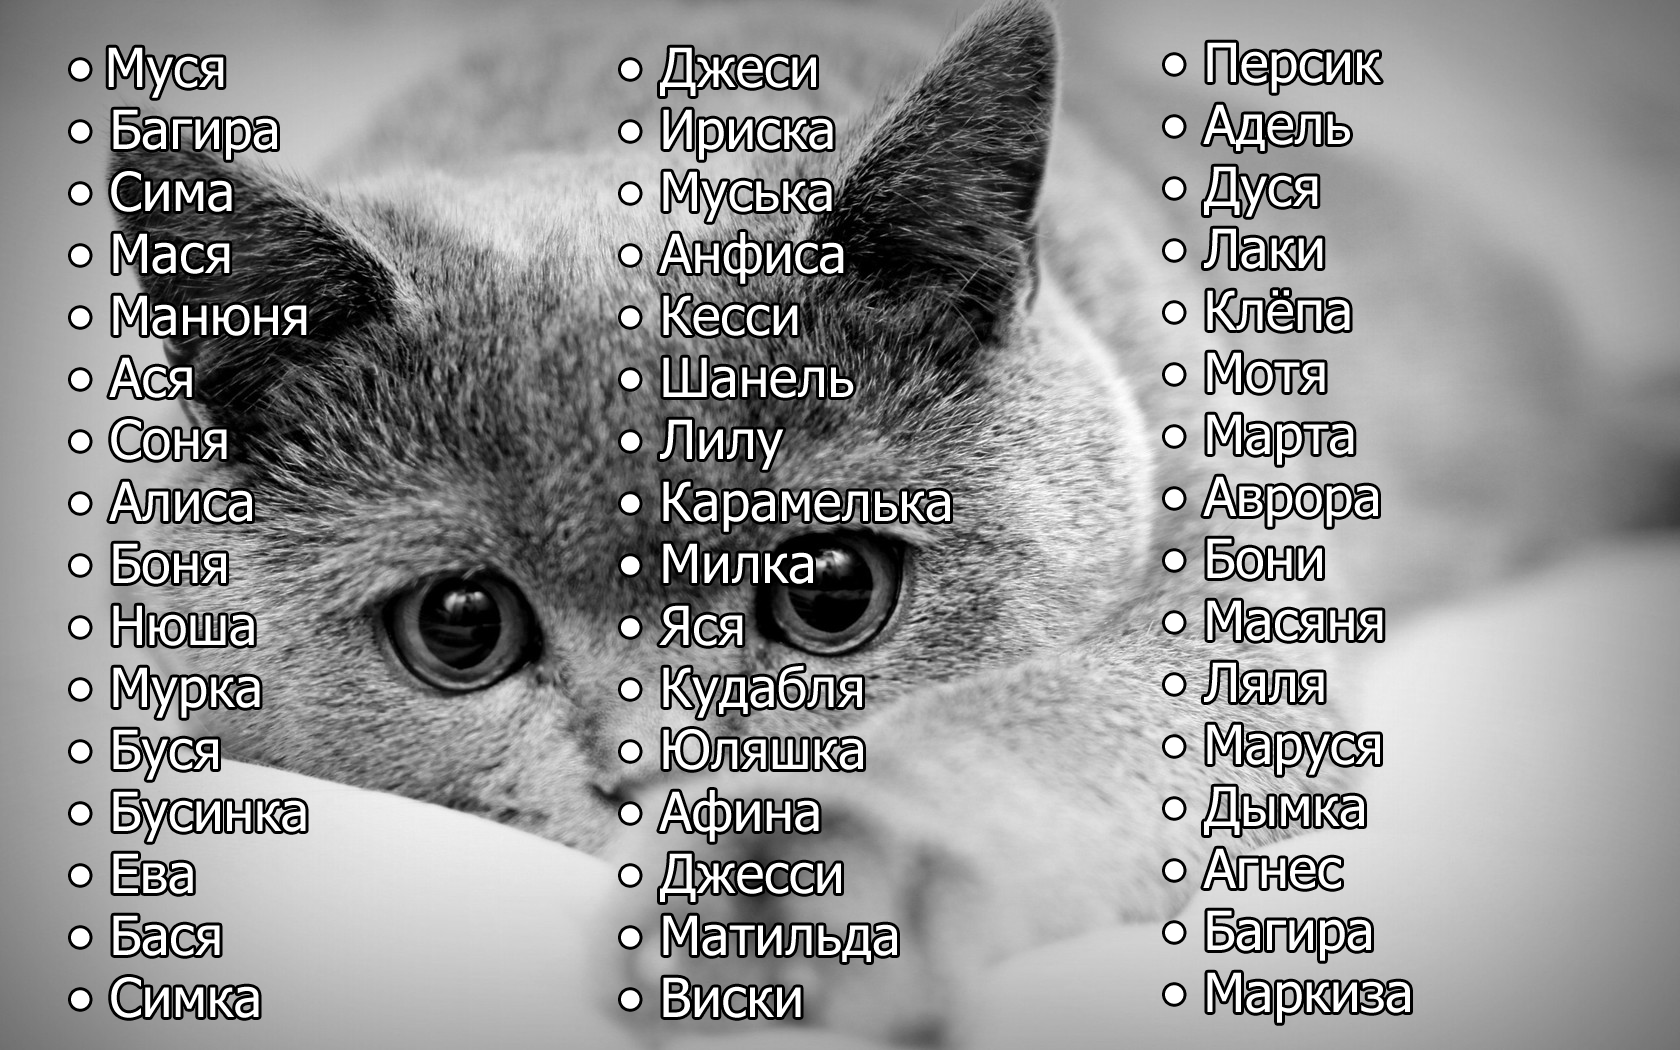 Имена для черно-белых котов: как назвать двухцветных котят с черным и белым окрасом? какие имена больше подходят для мальчиков, а какие для девочек?